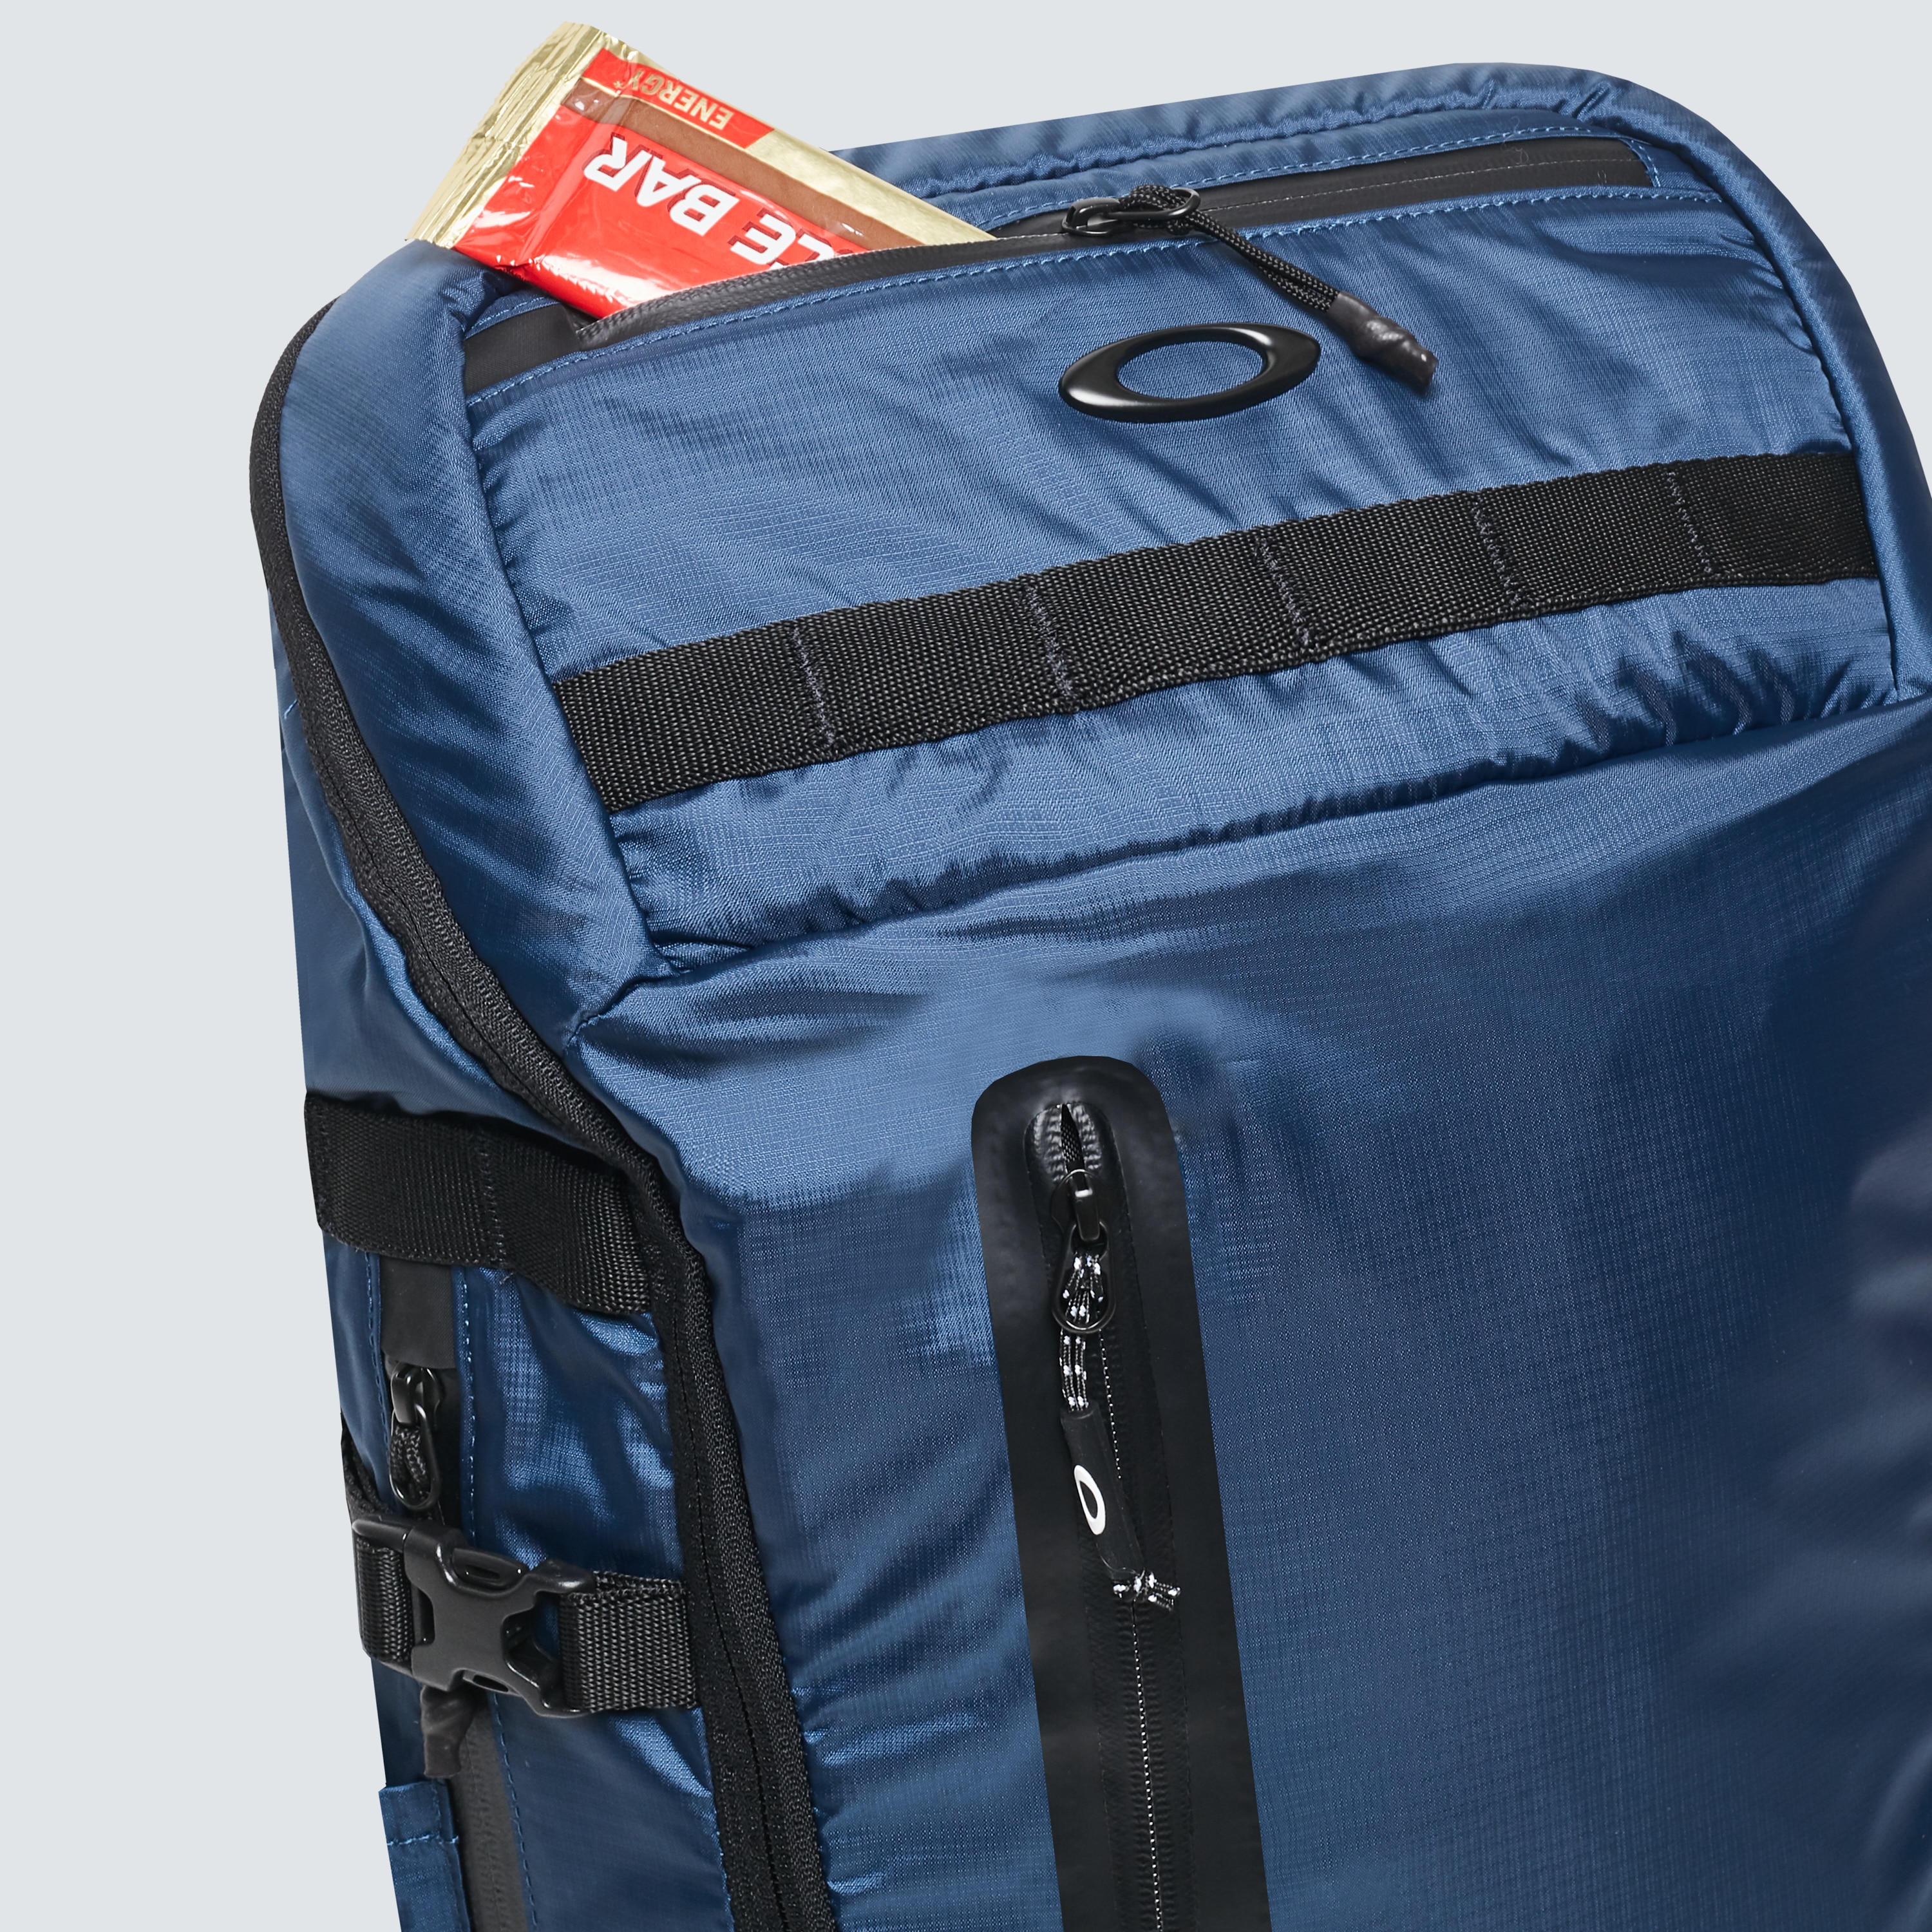 blue oakley backpack